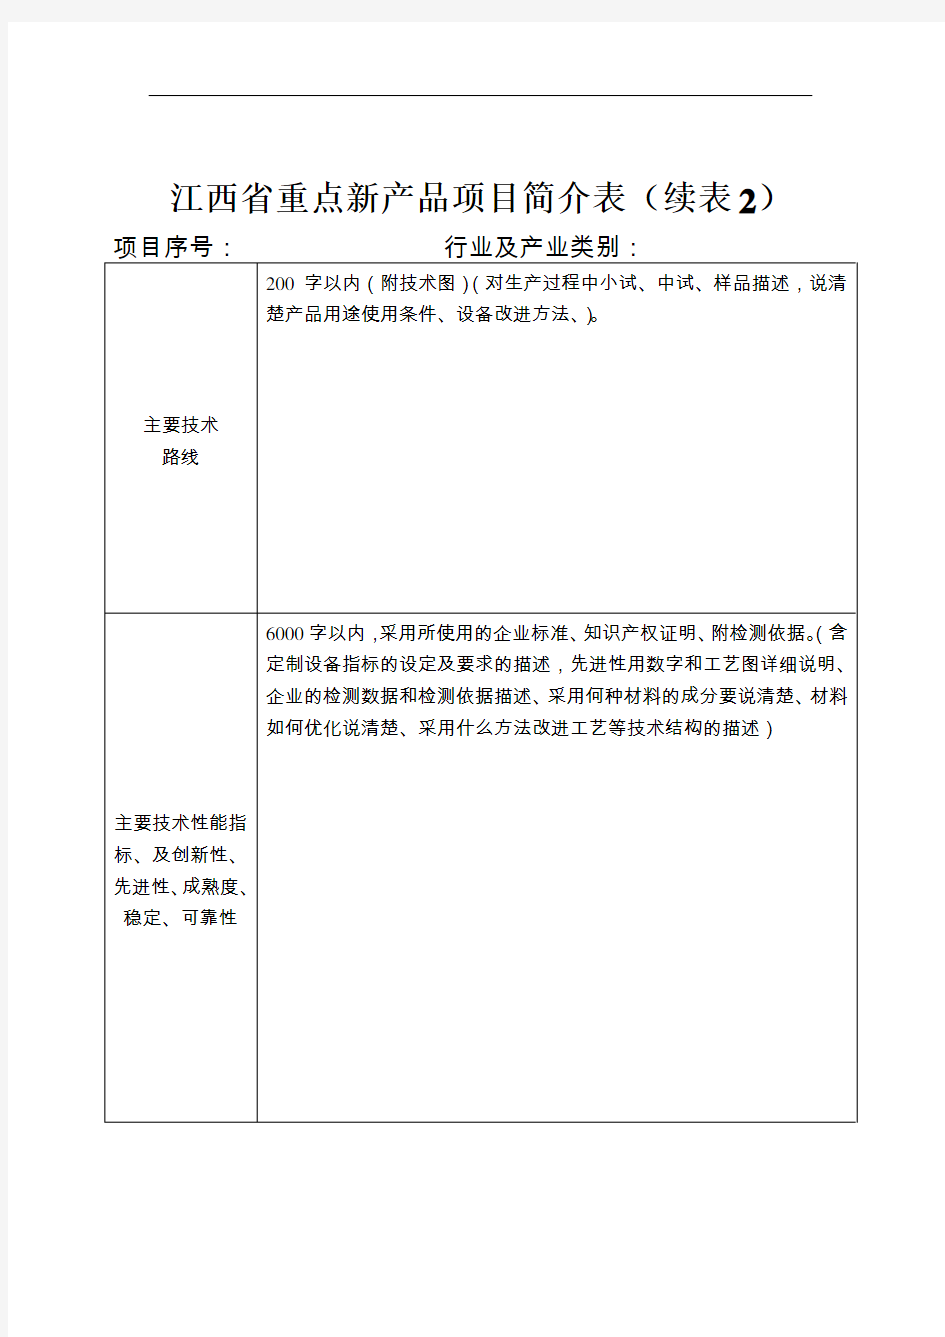 江西省重点新产品项目简介表(申报单位填)